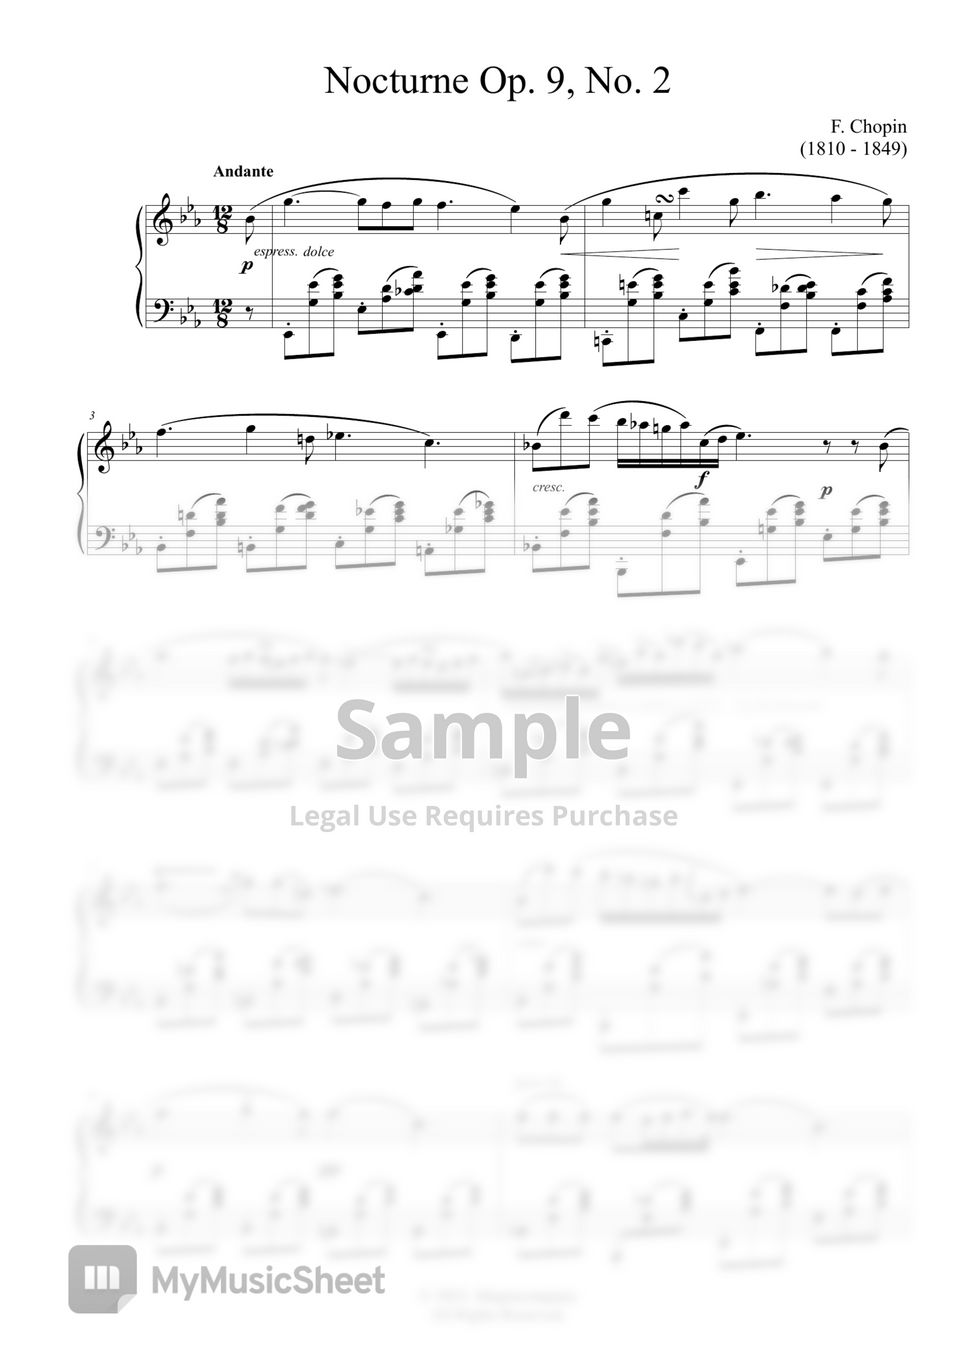 F. Chopin - Nocturne Op.9, No.2